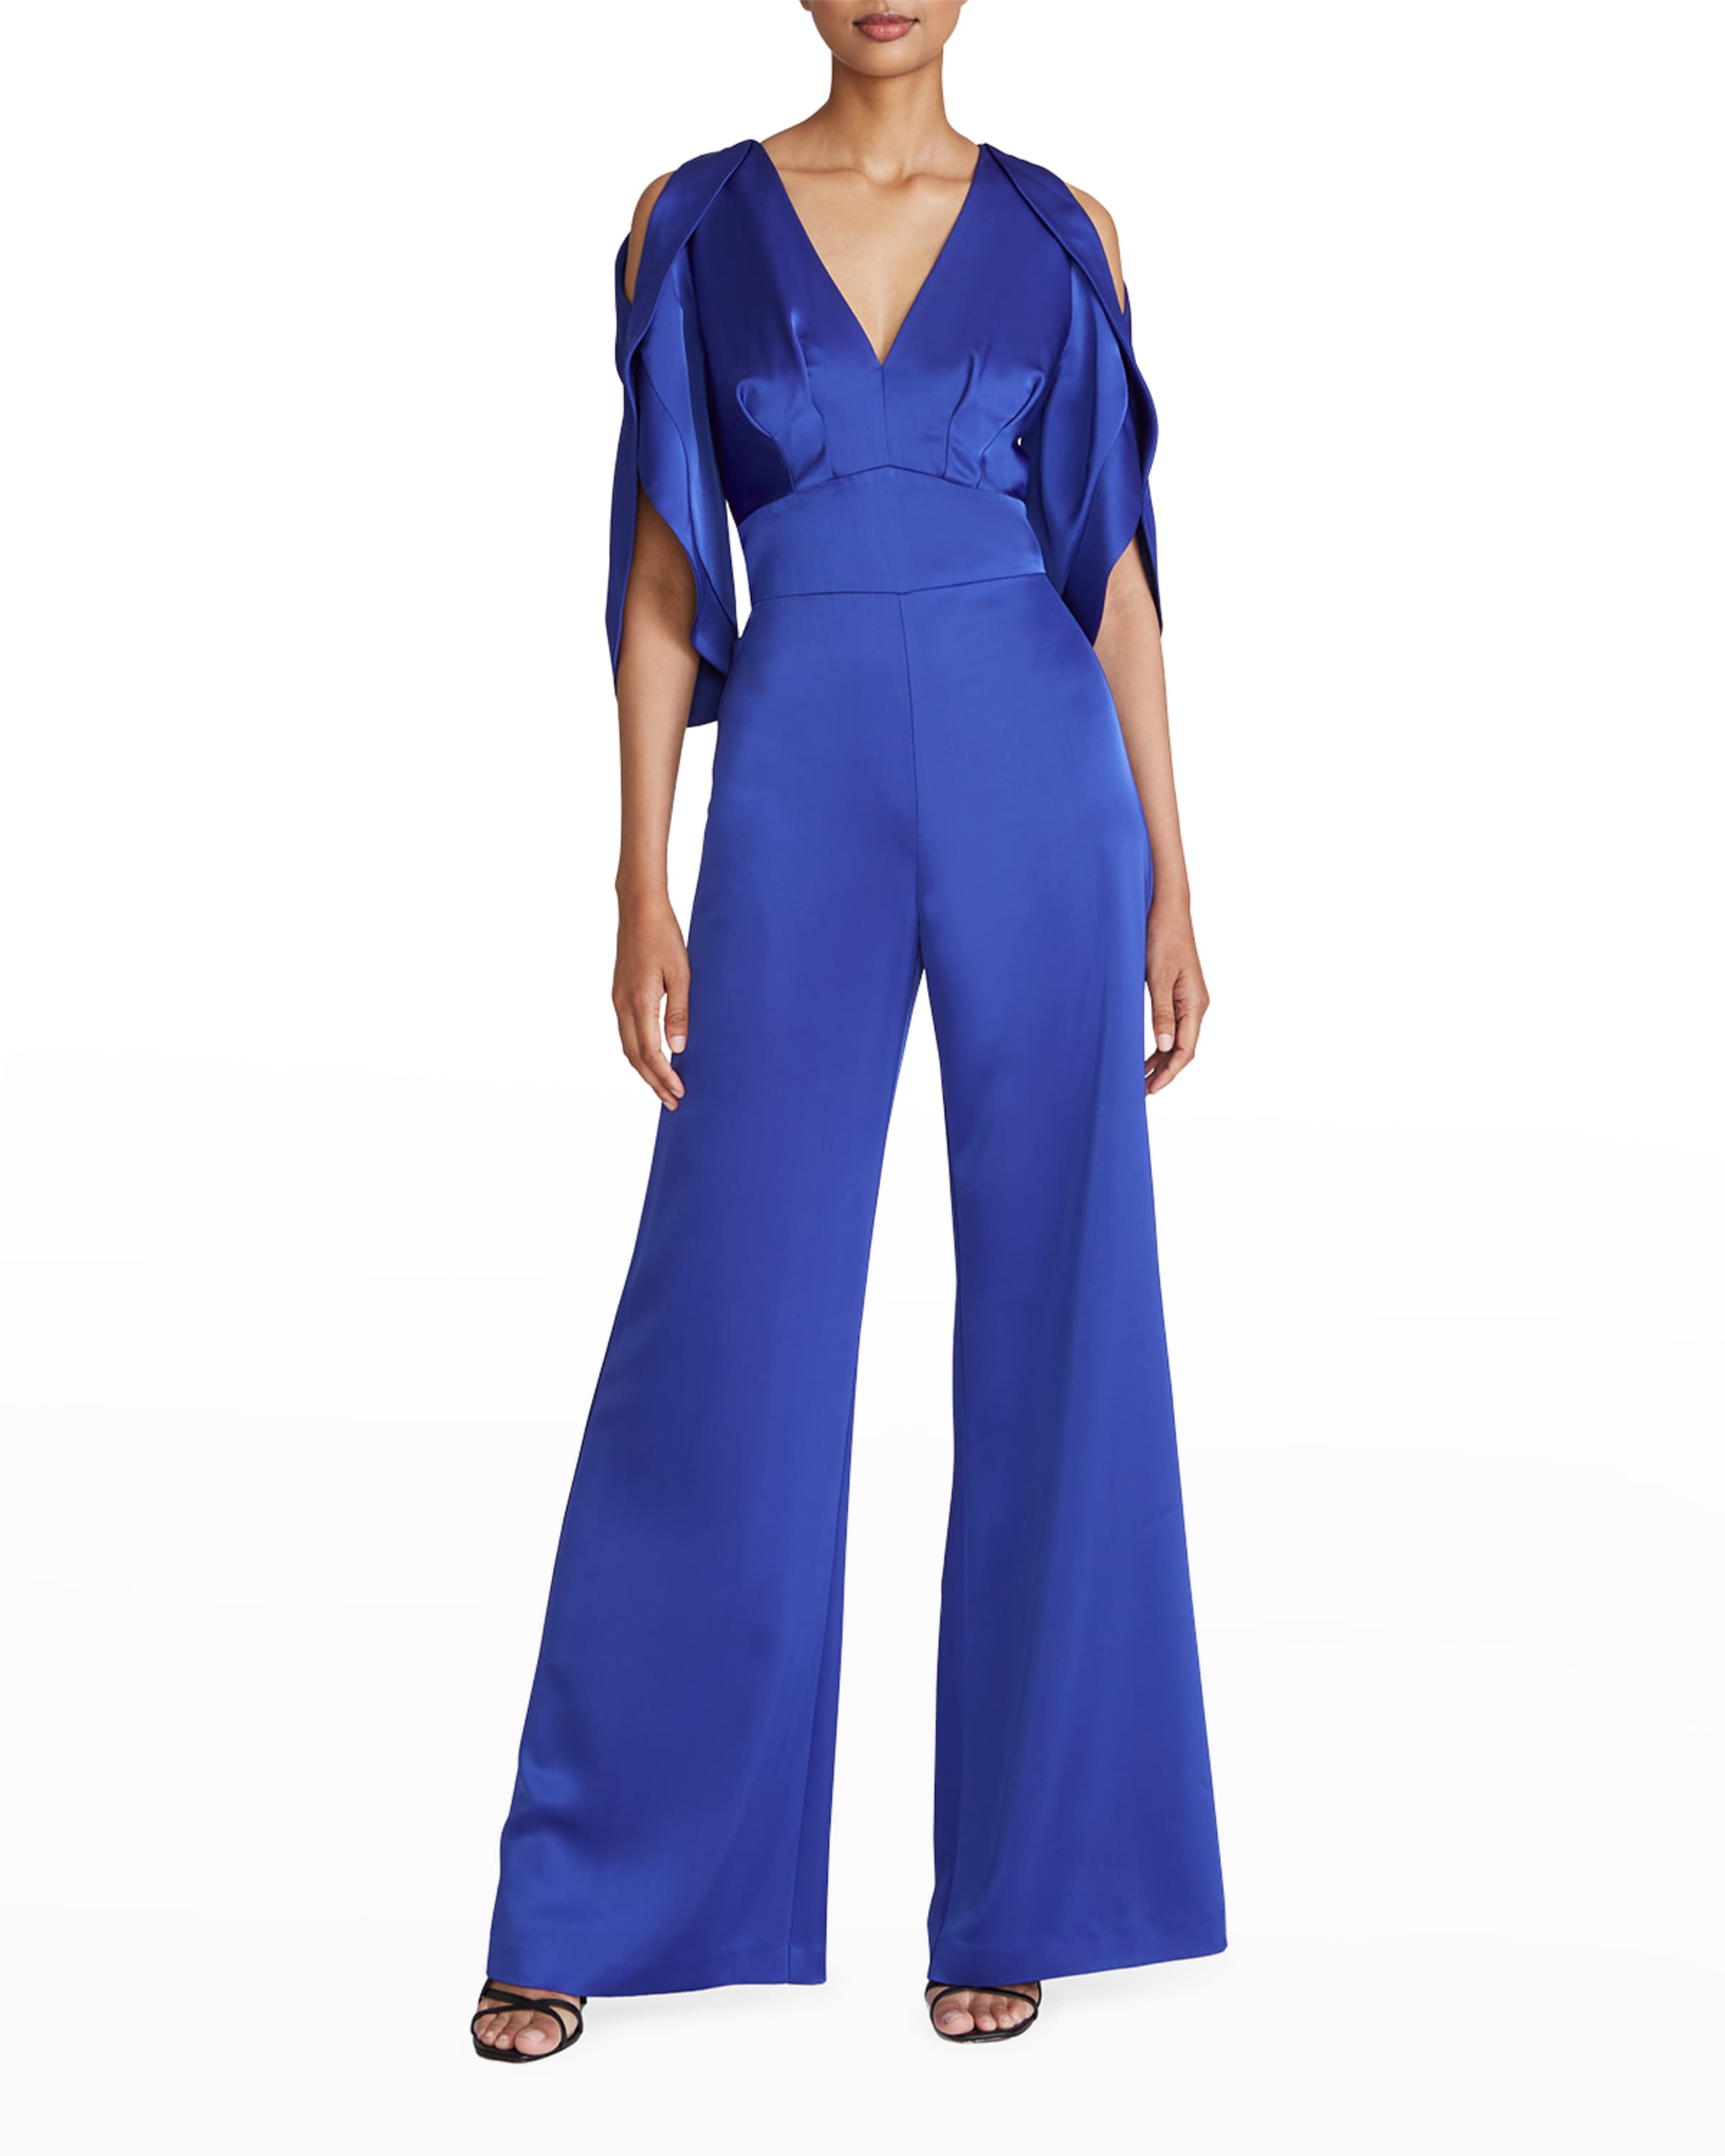 Bright Blue Silk Designer Jumpsuit for Evening with V Neck and Cold Shoulder